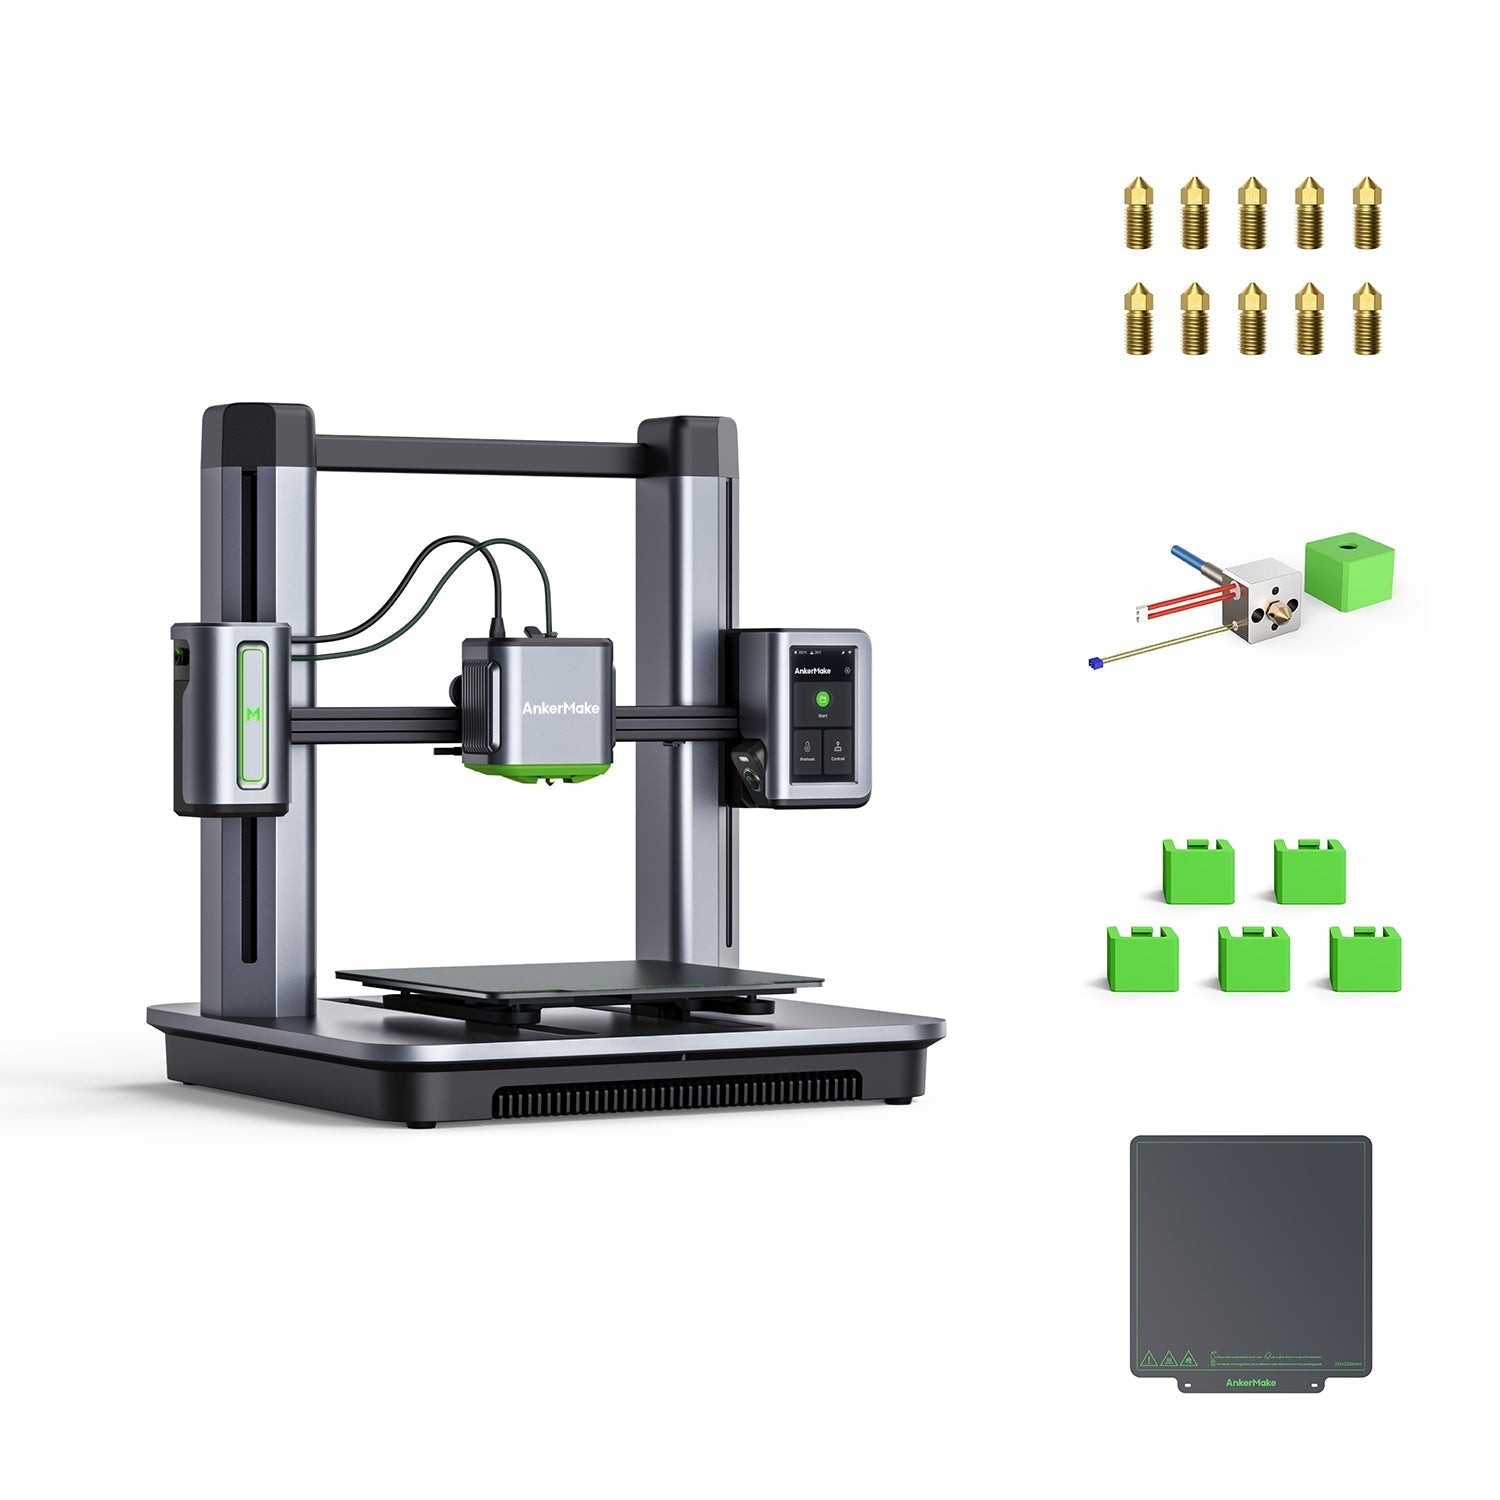 lige ud Hej Motivere AnkerMake | Explore the 3D Printing Frontier - Ankermake UK